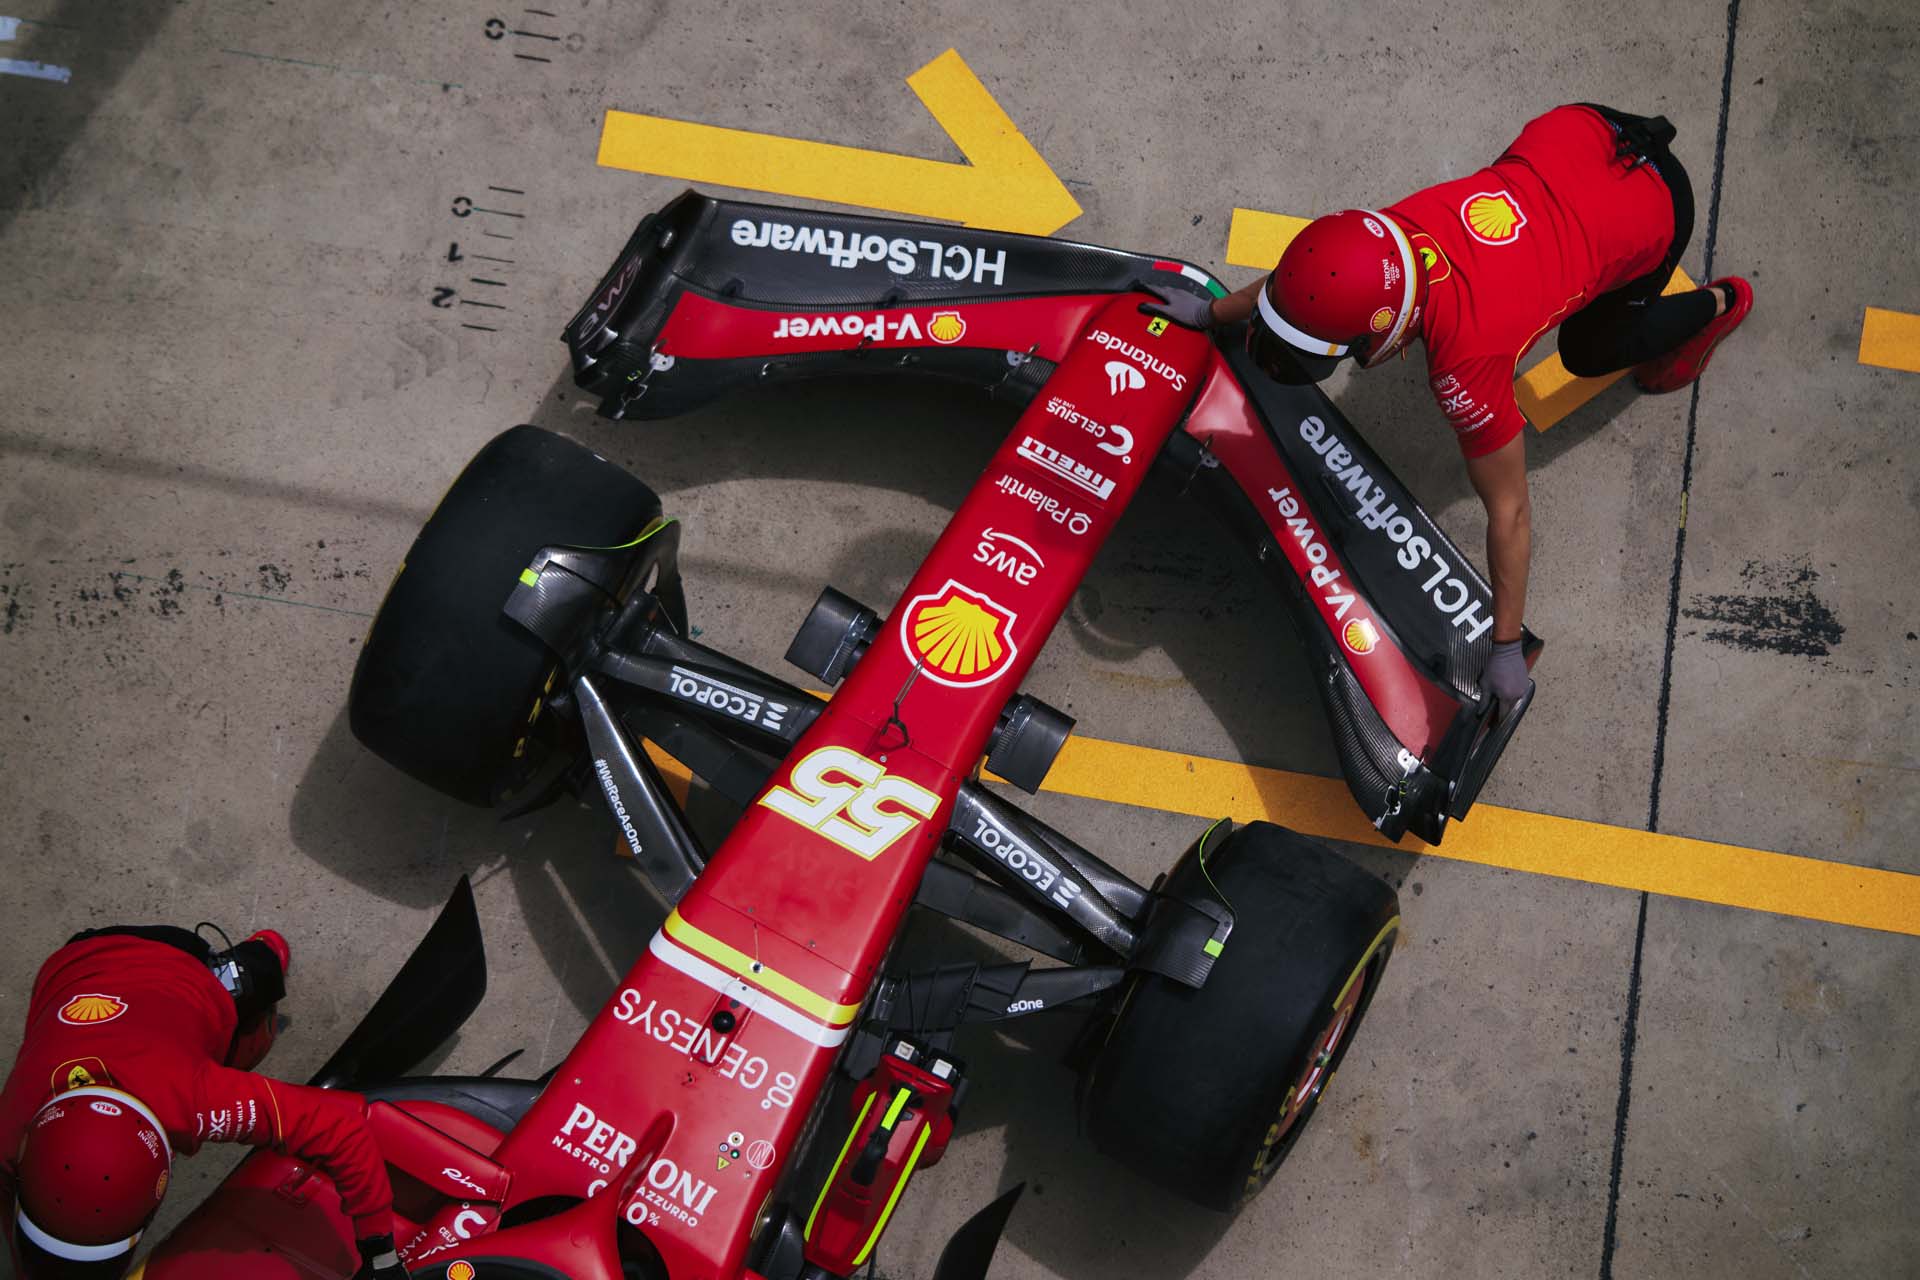 Sainz mesteri taktikája a Ferrarinak: A megfelelő időben beavatkozott a bajba